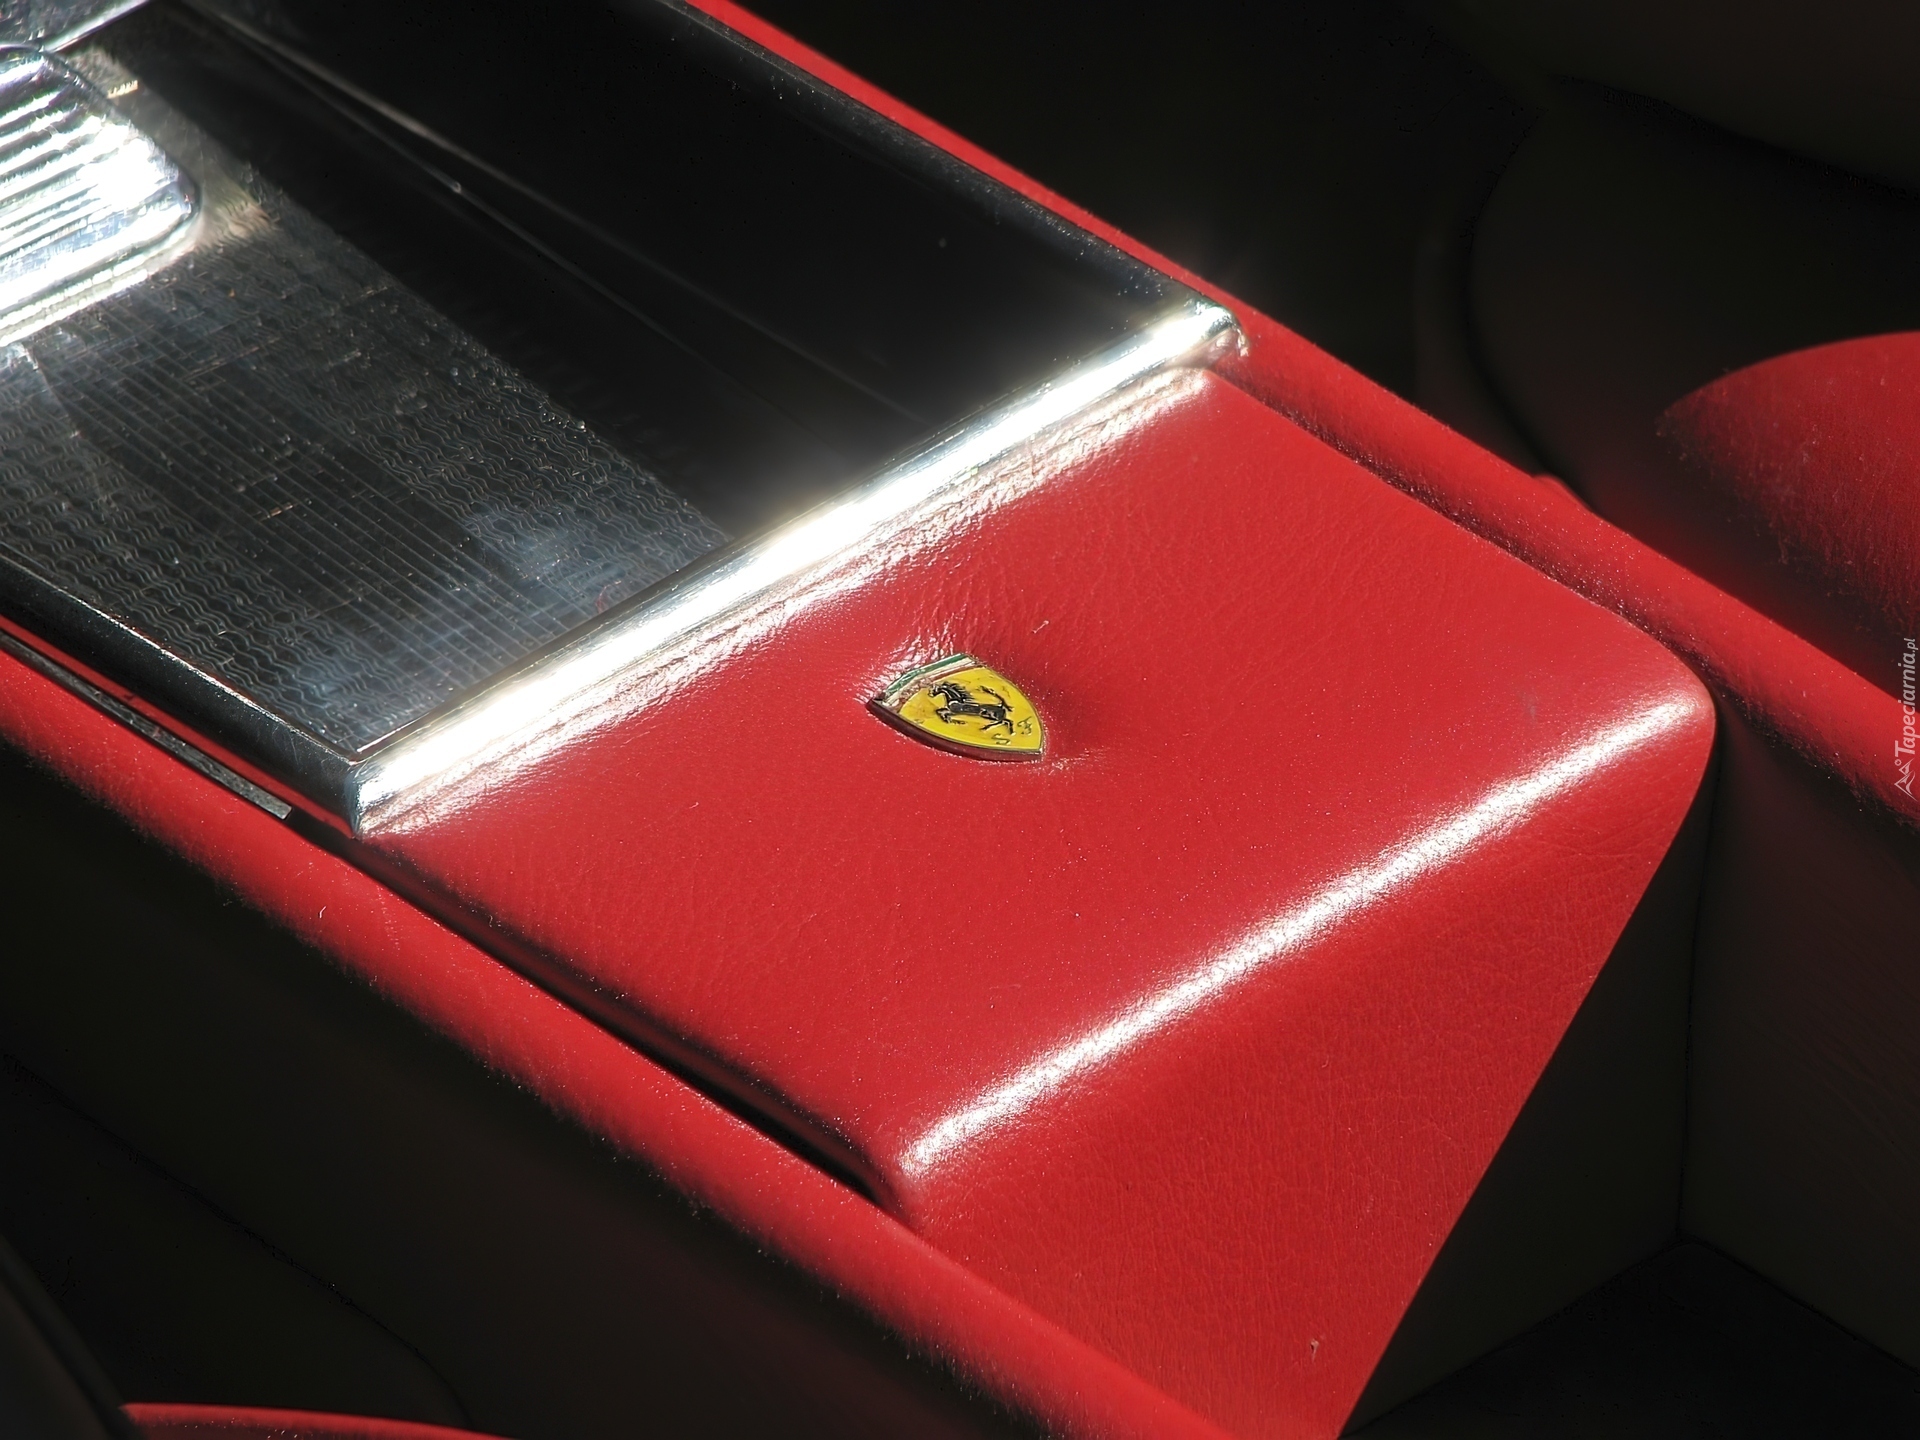 Podłokietnik, Ferrari